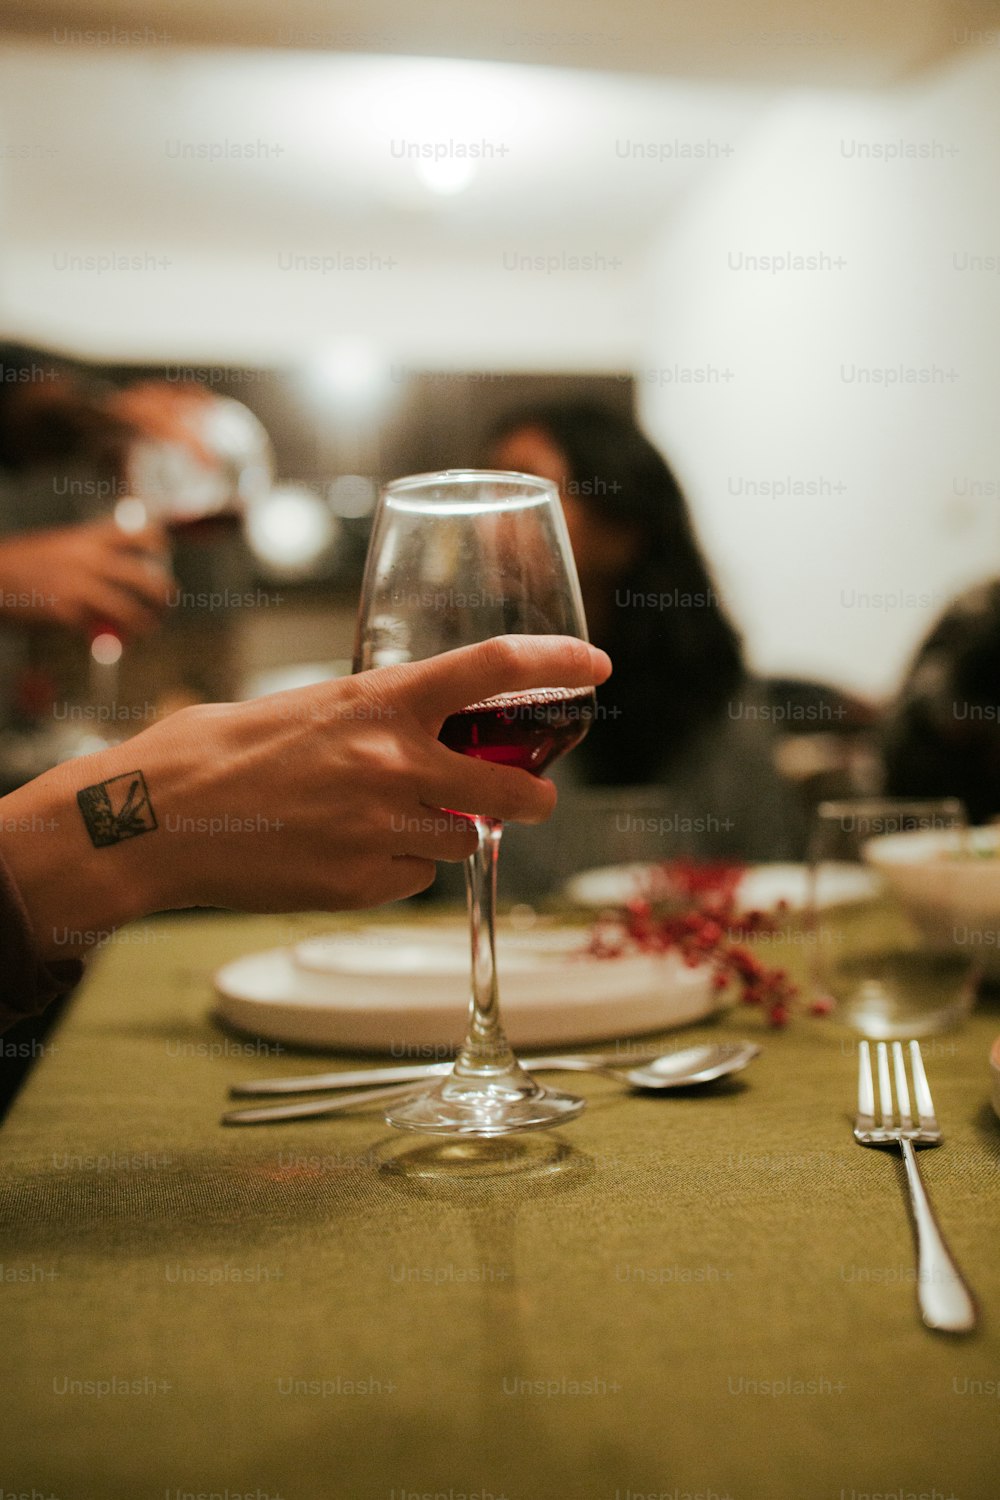 테이블에서 와인 한 잔을 들고 있는 사람